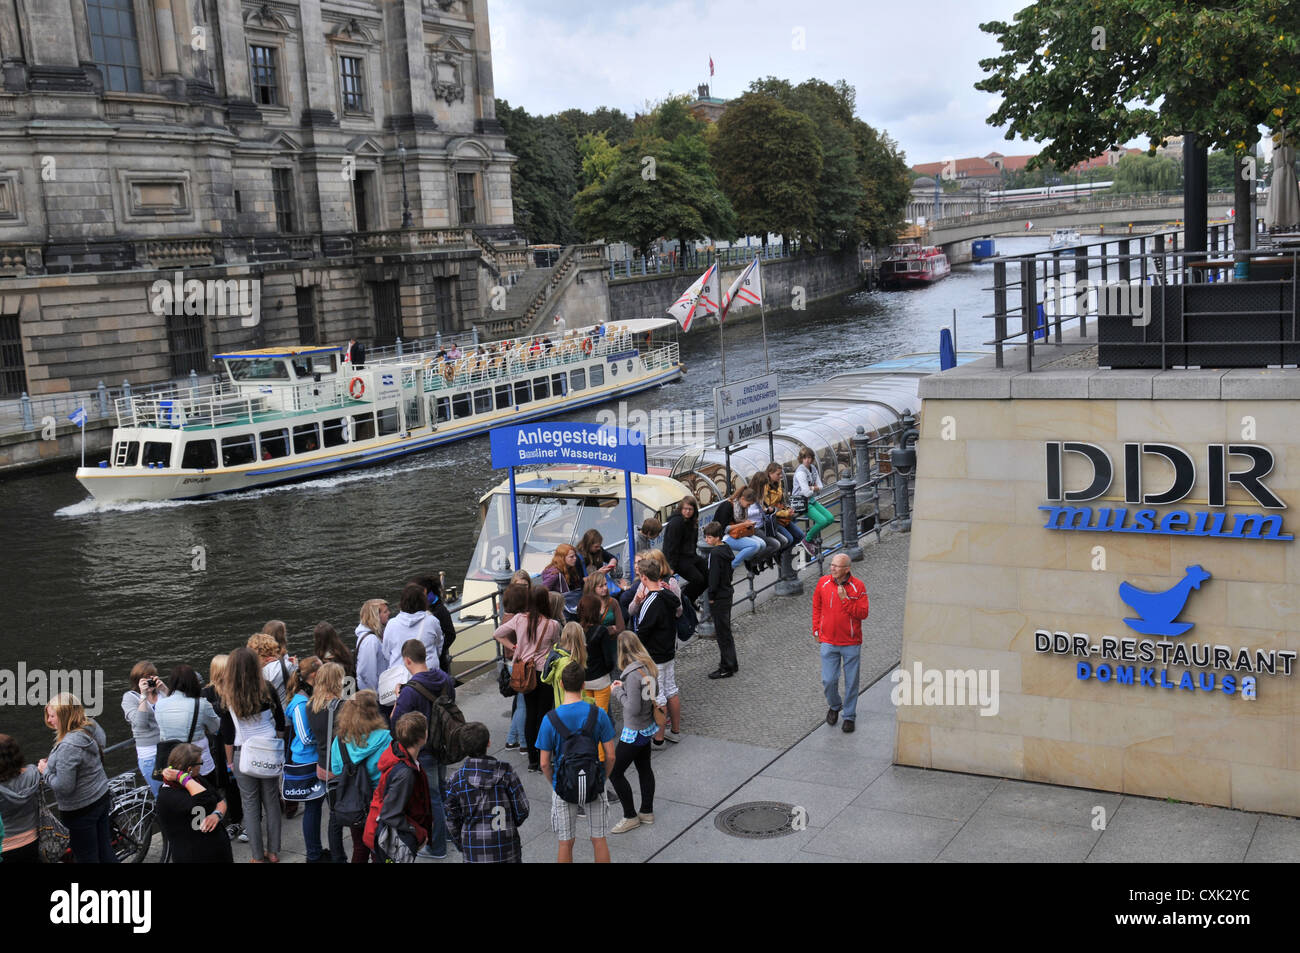 La rivière Spree et DDR museum Berlin Allemagne Banque D'Images